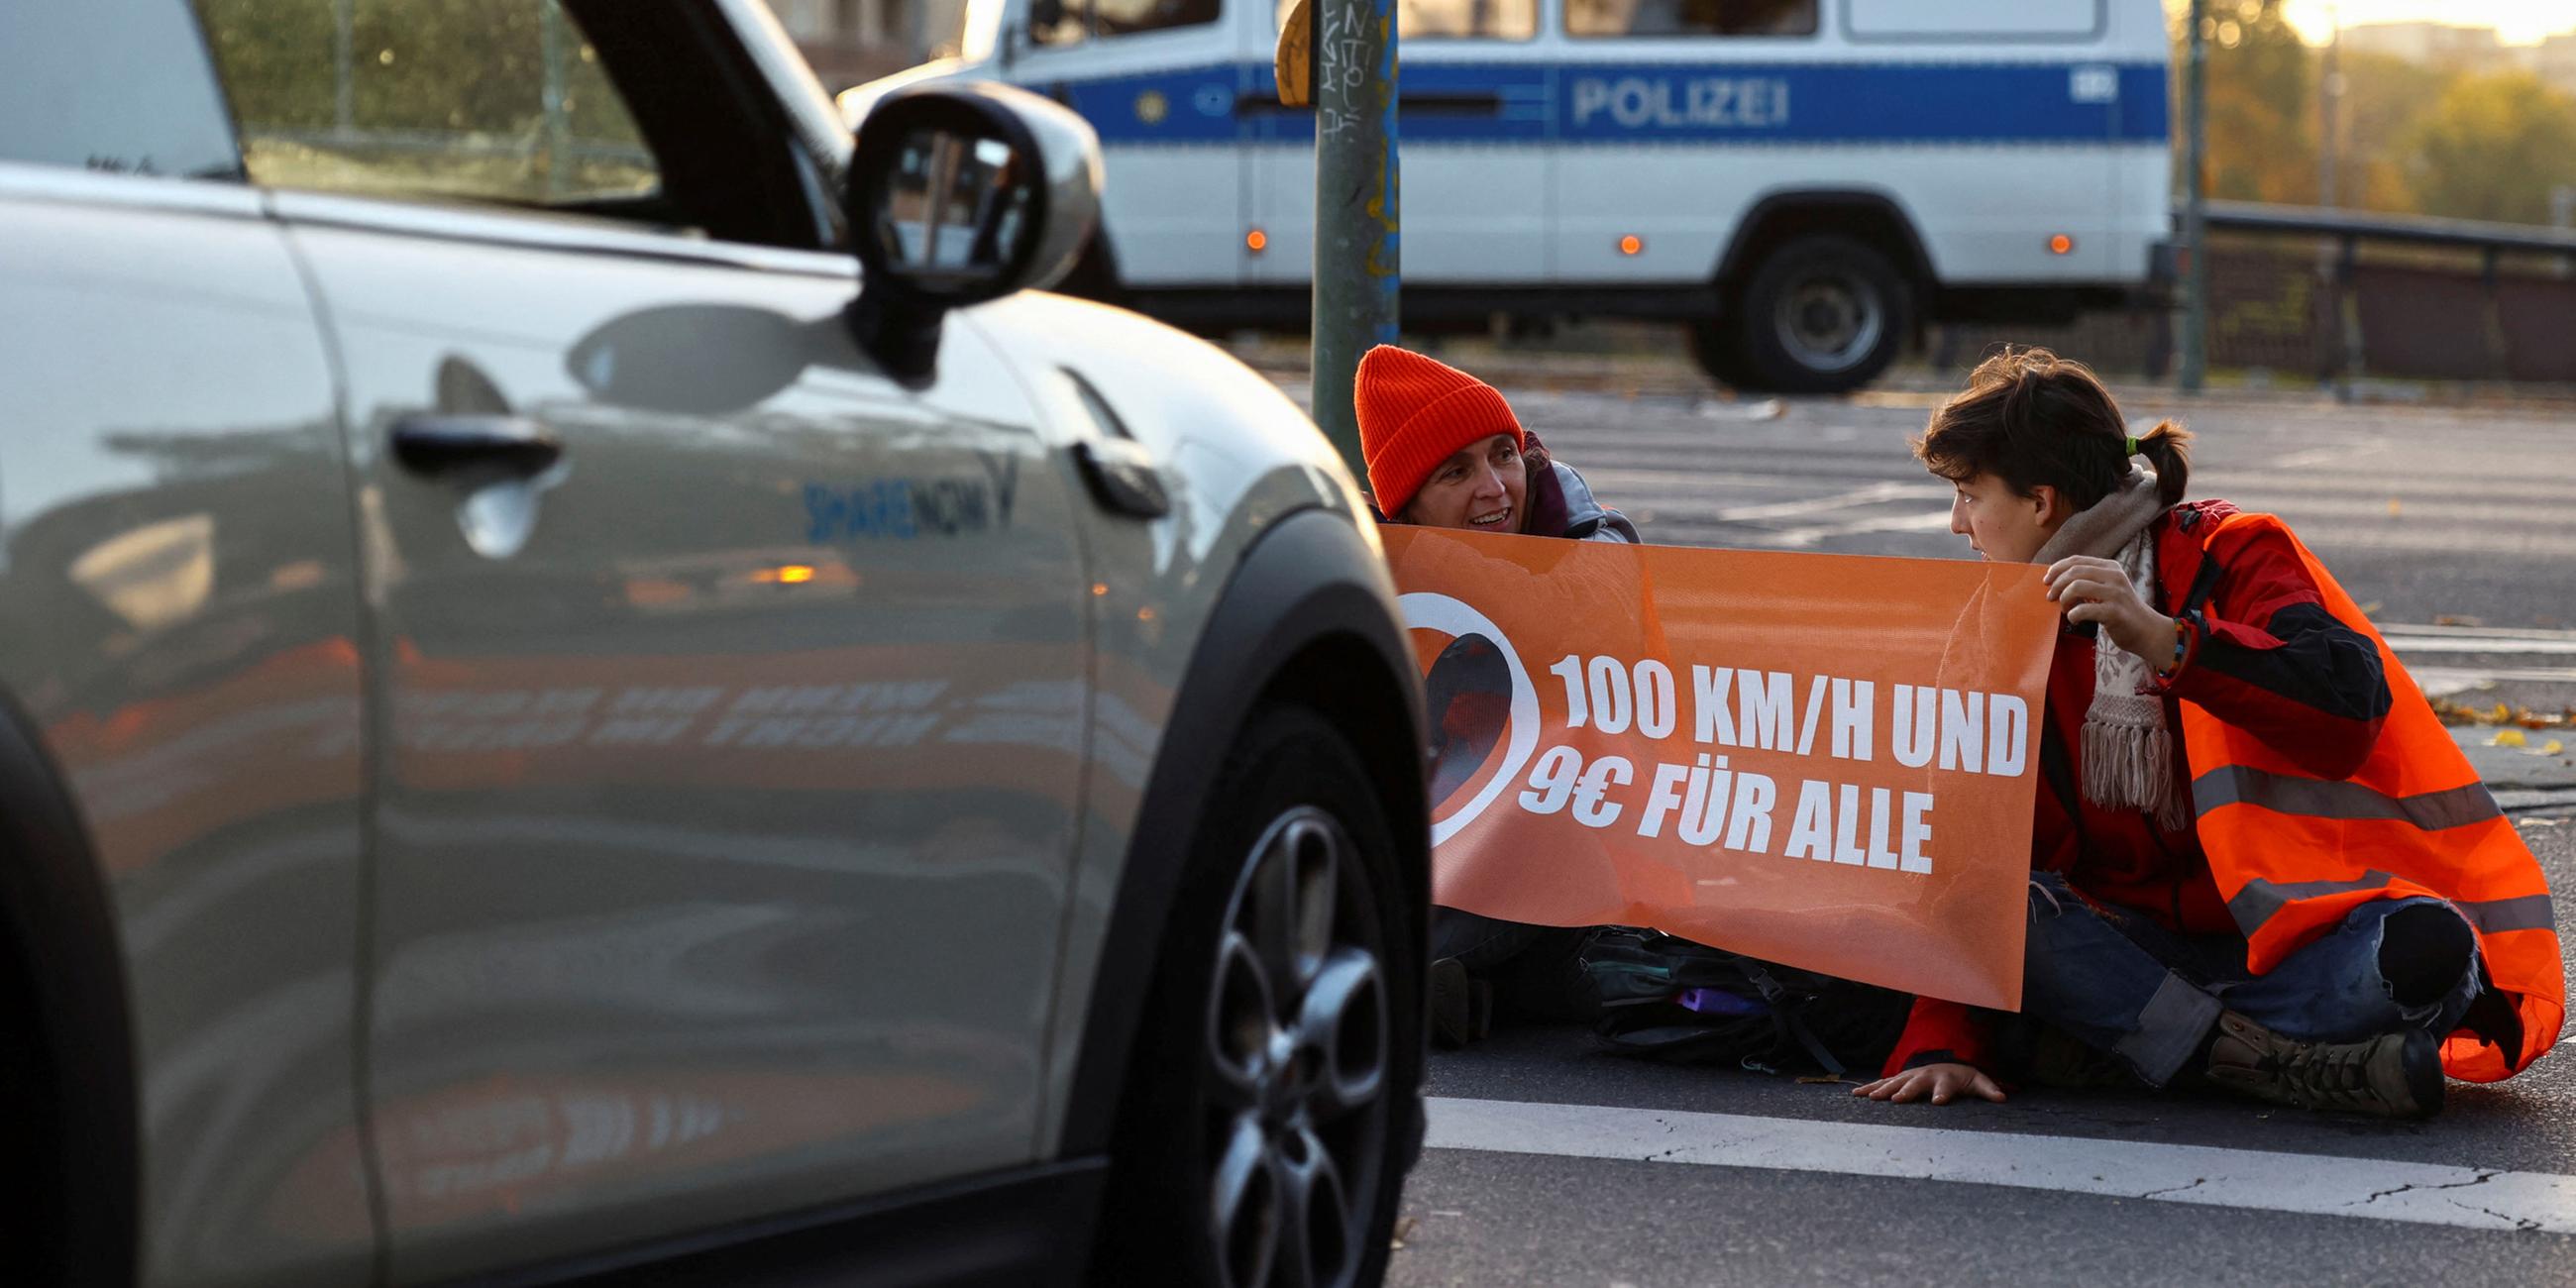 Archiv: Aktivisten der "Letzten Generation" protestieren am 11. 10. 2022 an der Ausfahrt einer Autobahn in Berlin für eine Geschwindigkeitsbegrenzung auf Autobahnen sowie für erschwingliche öffentliche Verkehrsmittel.